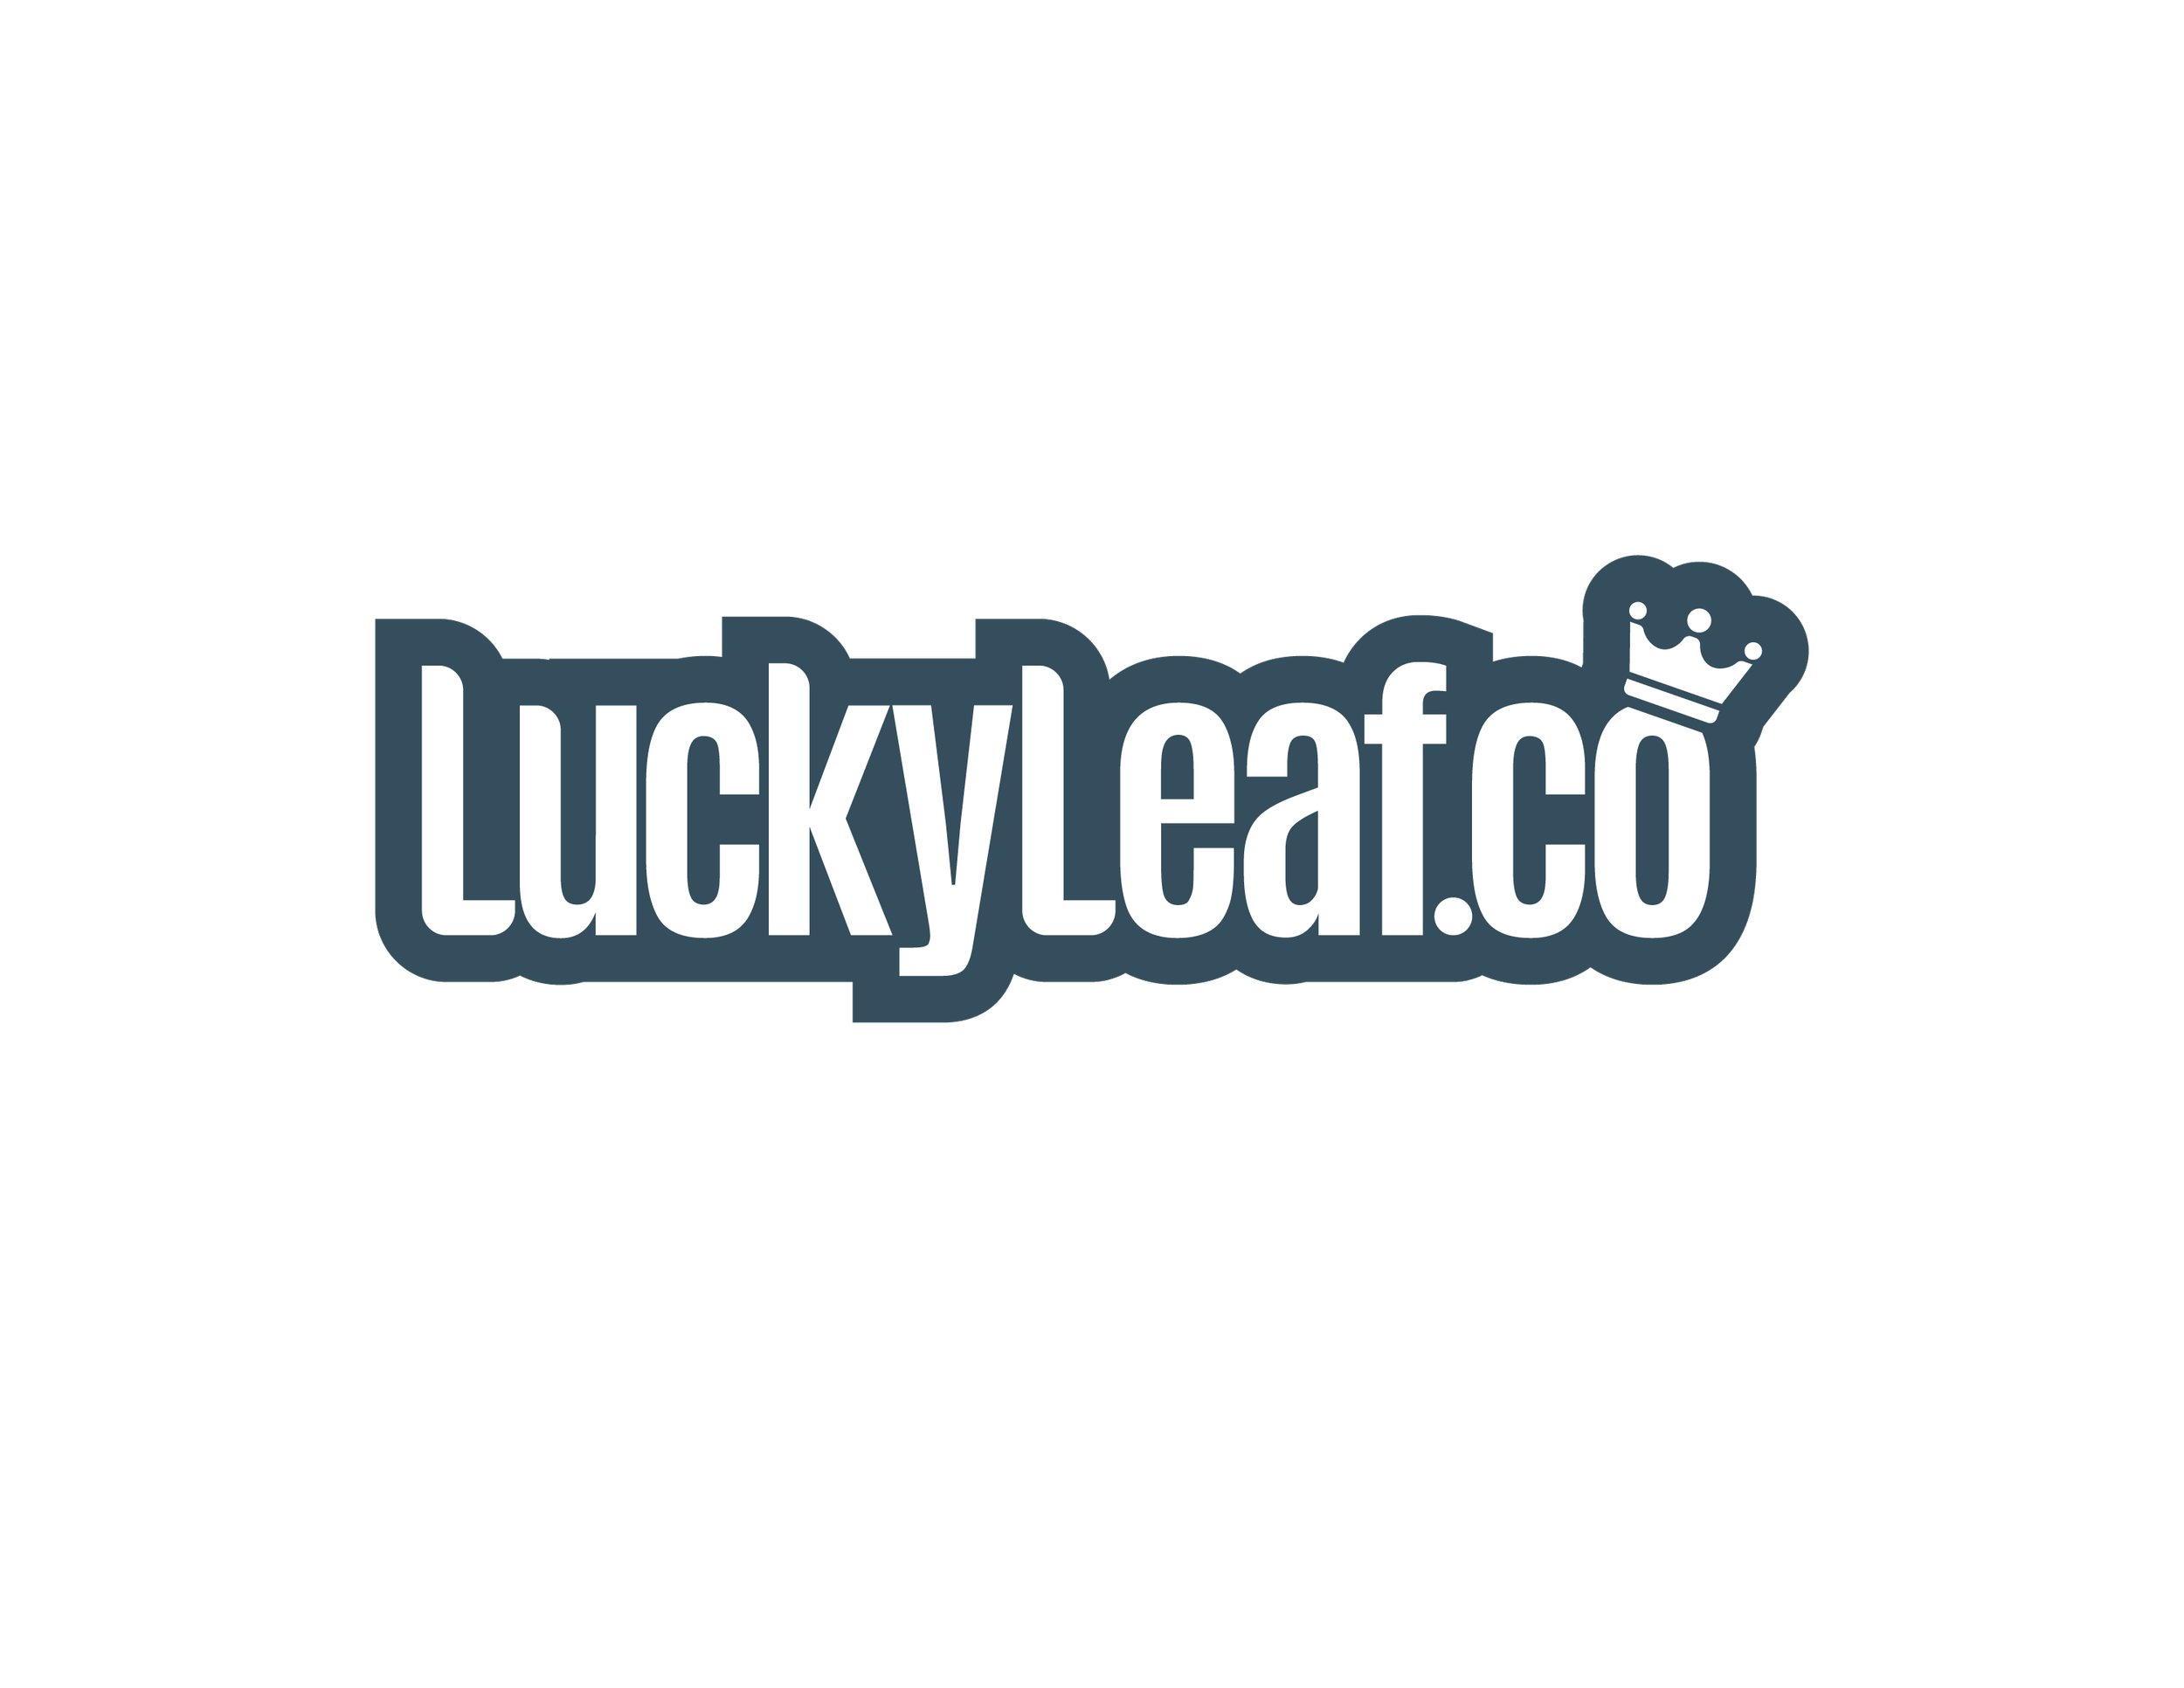 Lucky Leaf Co.